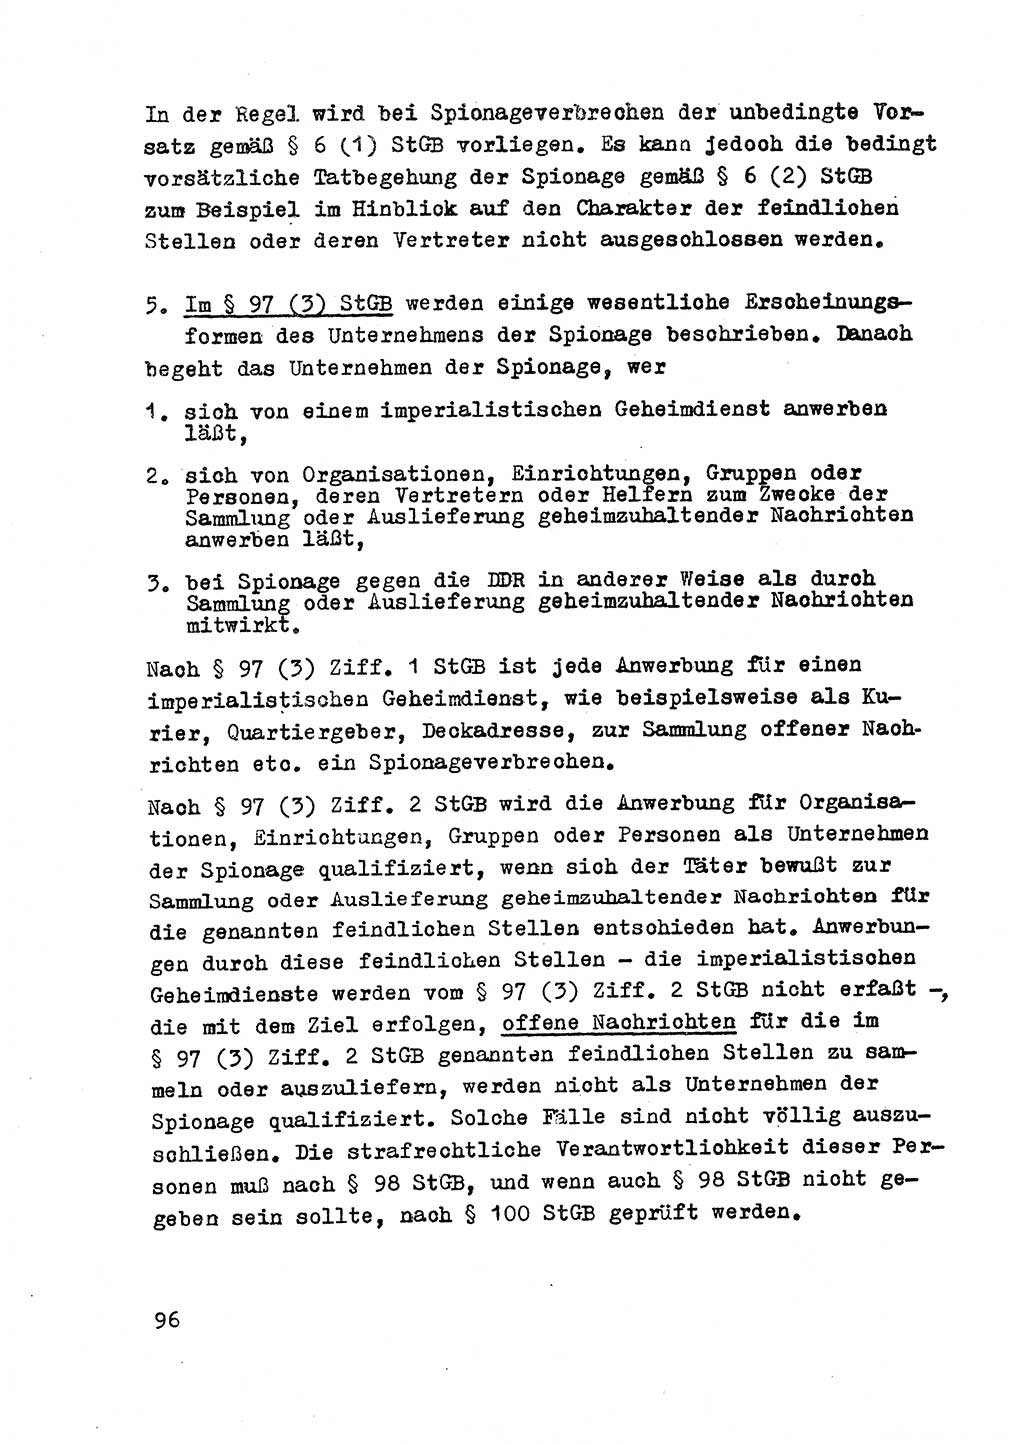 Strafrecht der DDR (Deutsche Demokratische Republik), Besonderer Teil, Lehrmaterial, Heft 2 1969, Seite 96 (Strafr. DDR BT Lehrmat. H. 2 1969, S. 96)